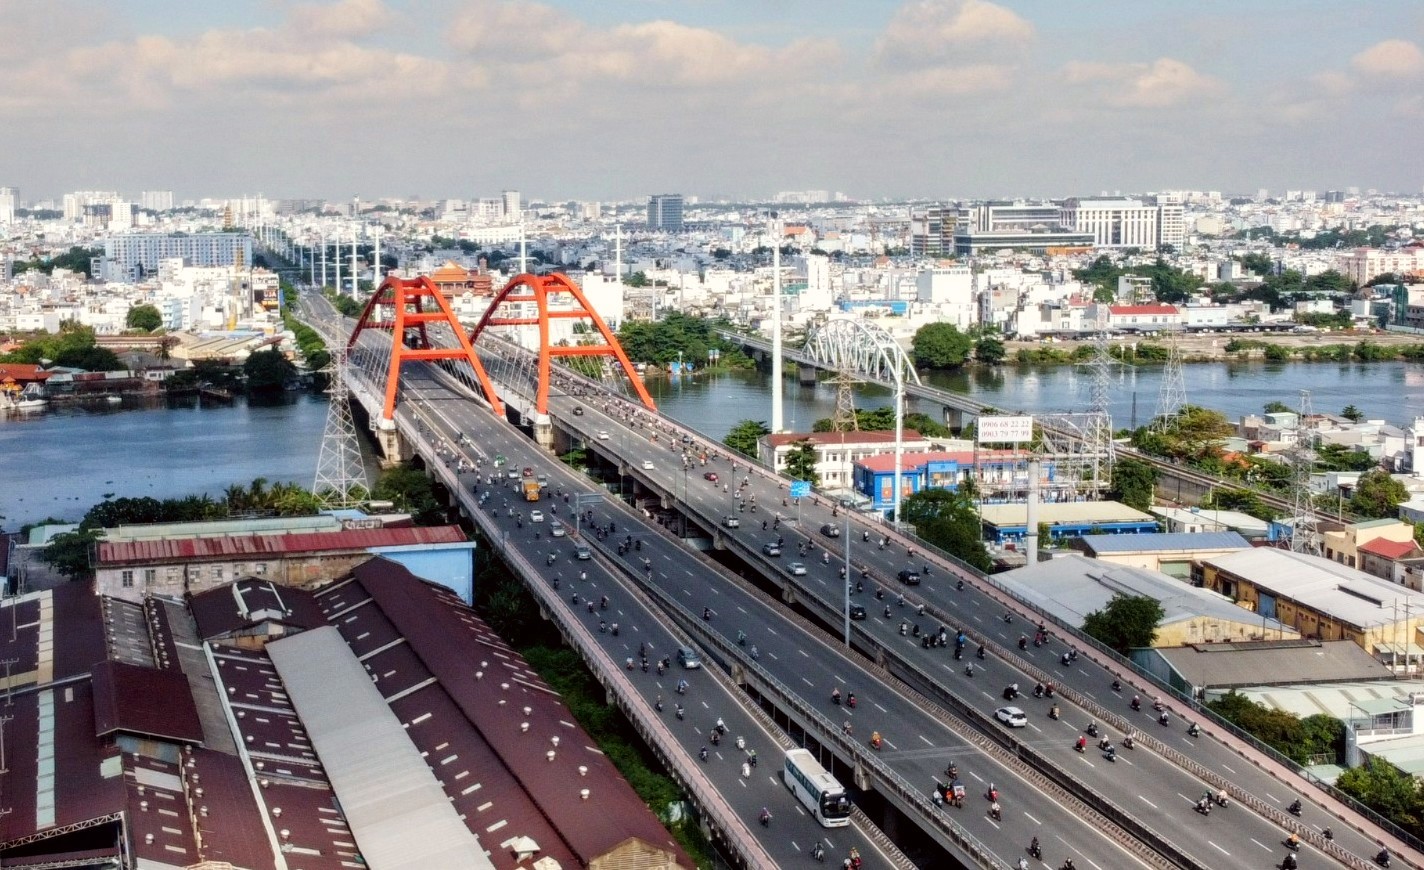 Diện mạo TPHCM ngày càng có sự thay đổi rõ rệt và phát triển mạnh mẽ. Sự thay đổi đó không thể không kể đến vài trò của những cây cầu vượt bắc qua sông Sài Gòn và cầu Sài Gòn là một trong những cái tên được nhắc đến.